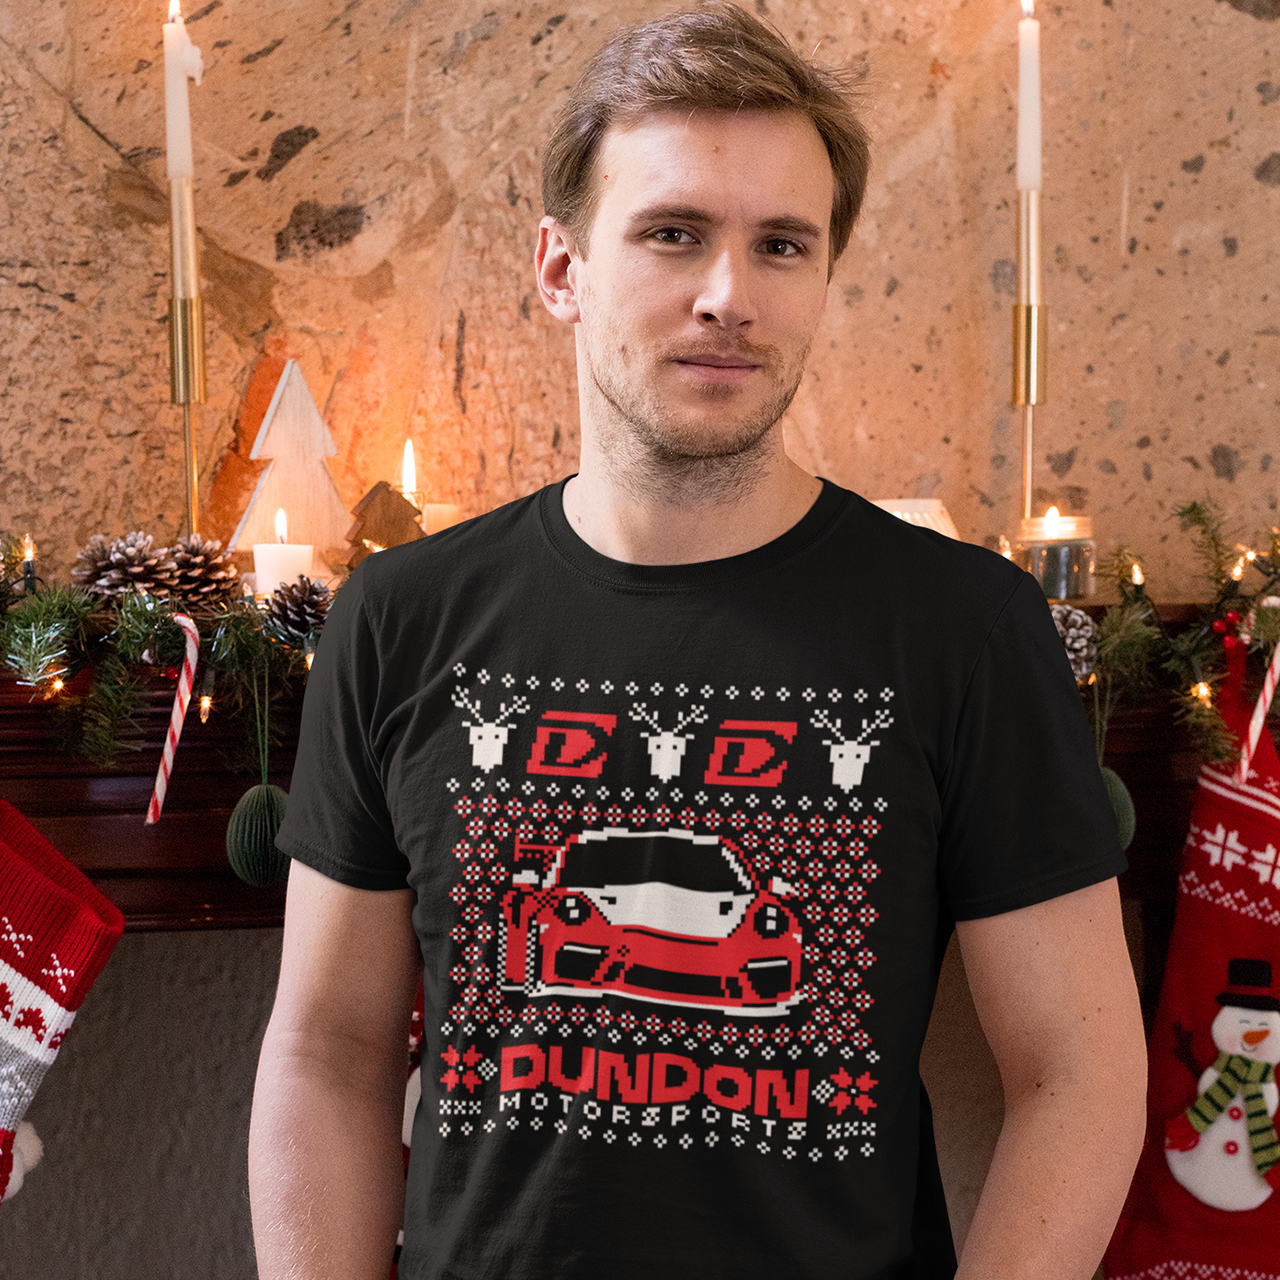 Dundon Motorsports Christmas Sweater T-shirt - Dundon Motorsports